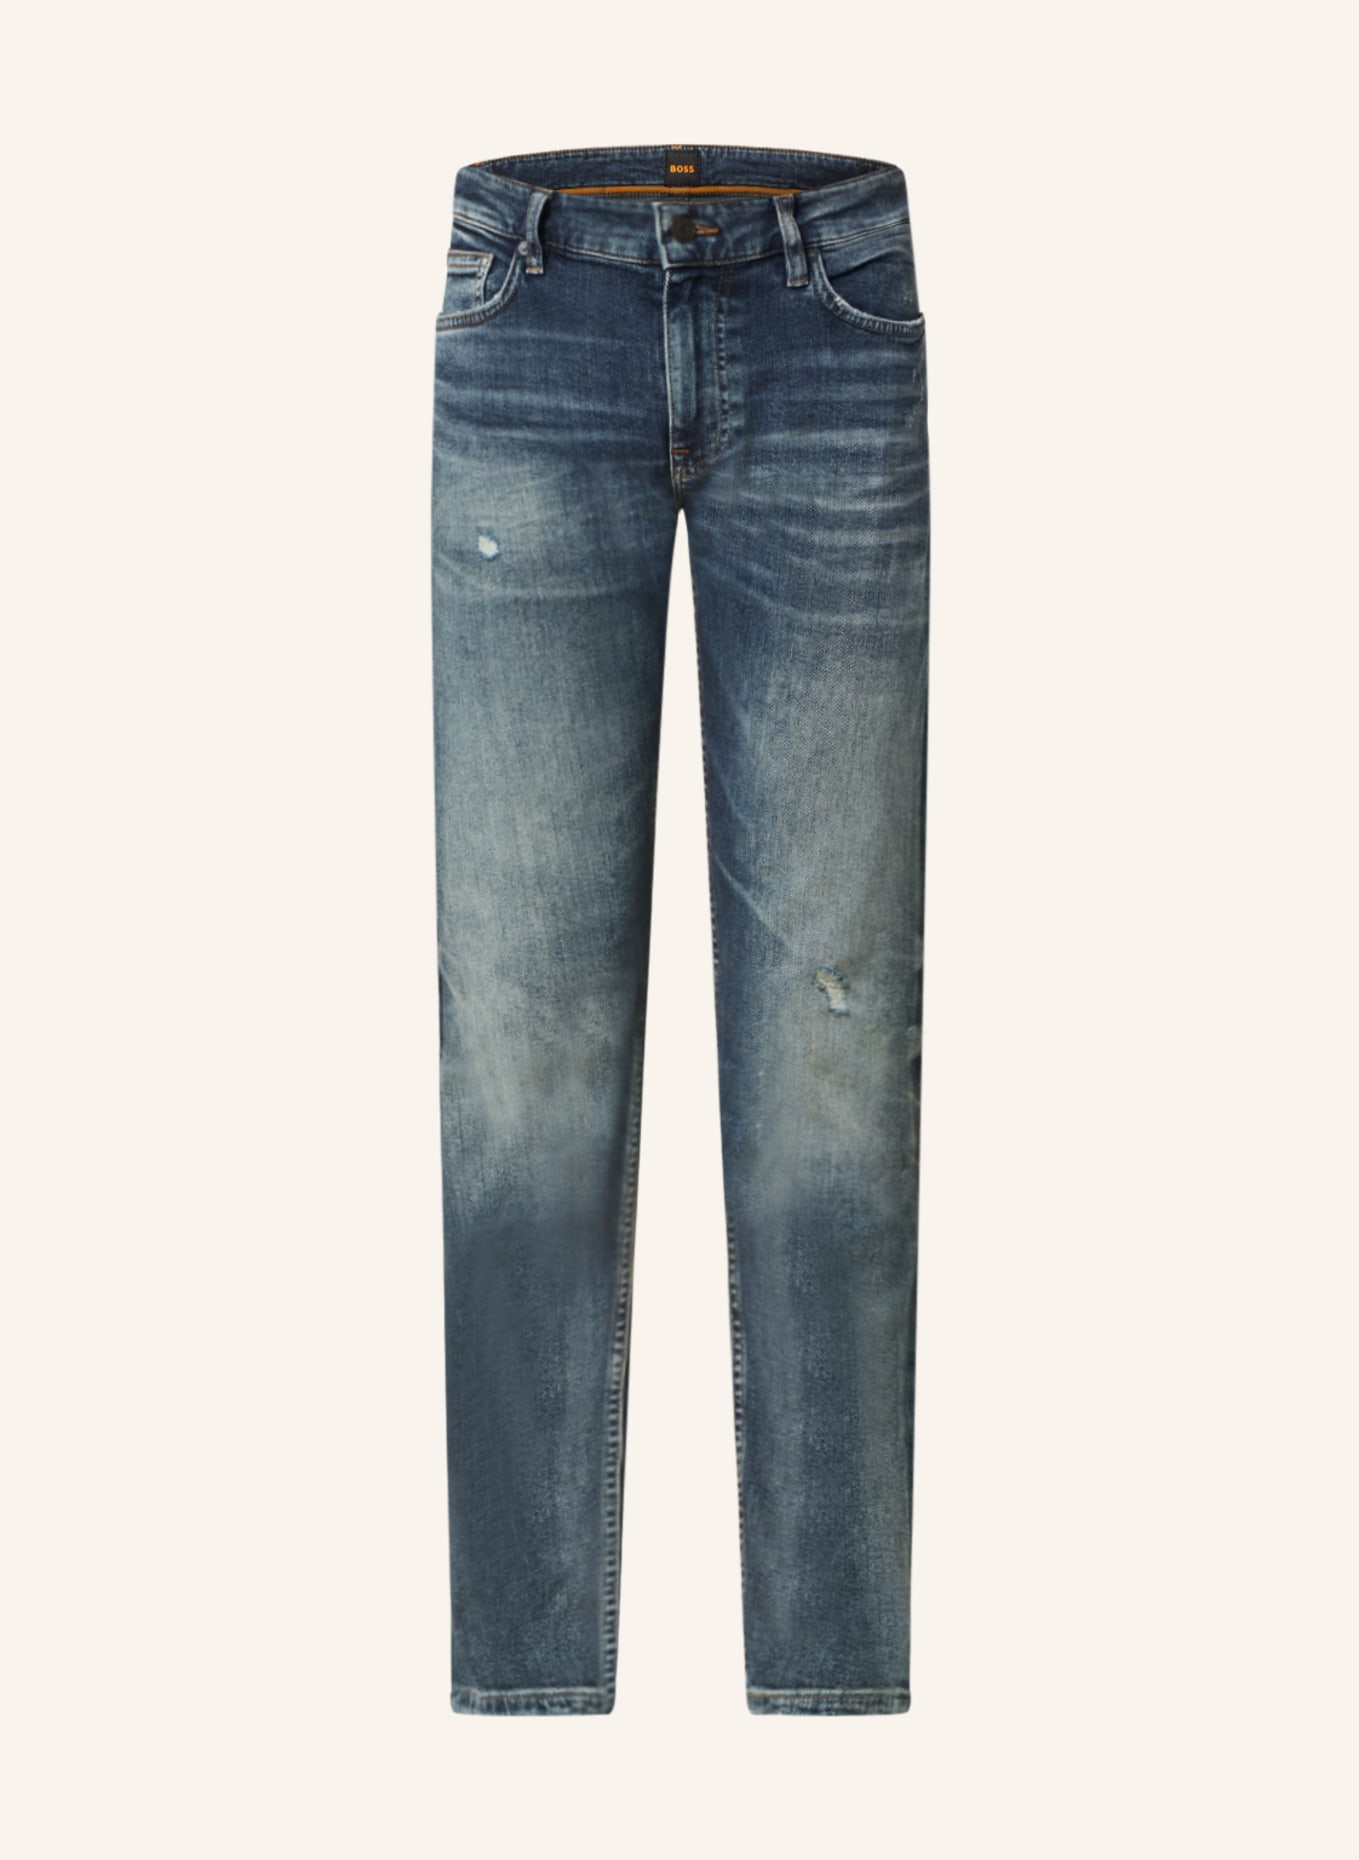 BOSS Jeans DELAWARE Slim Fit, Farbe: 413 NAVY (Bild 1)